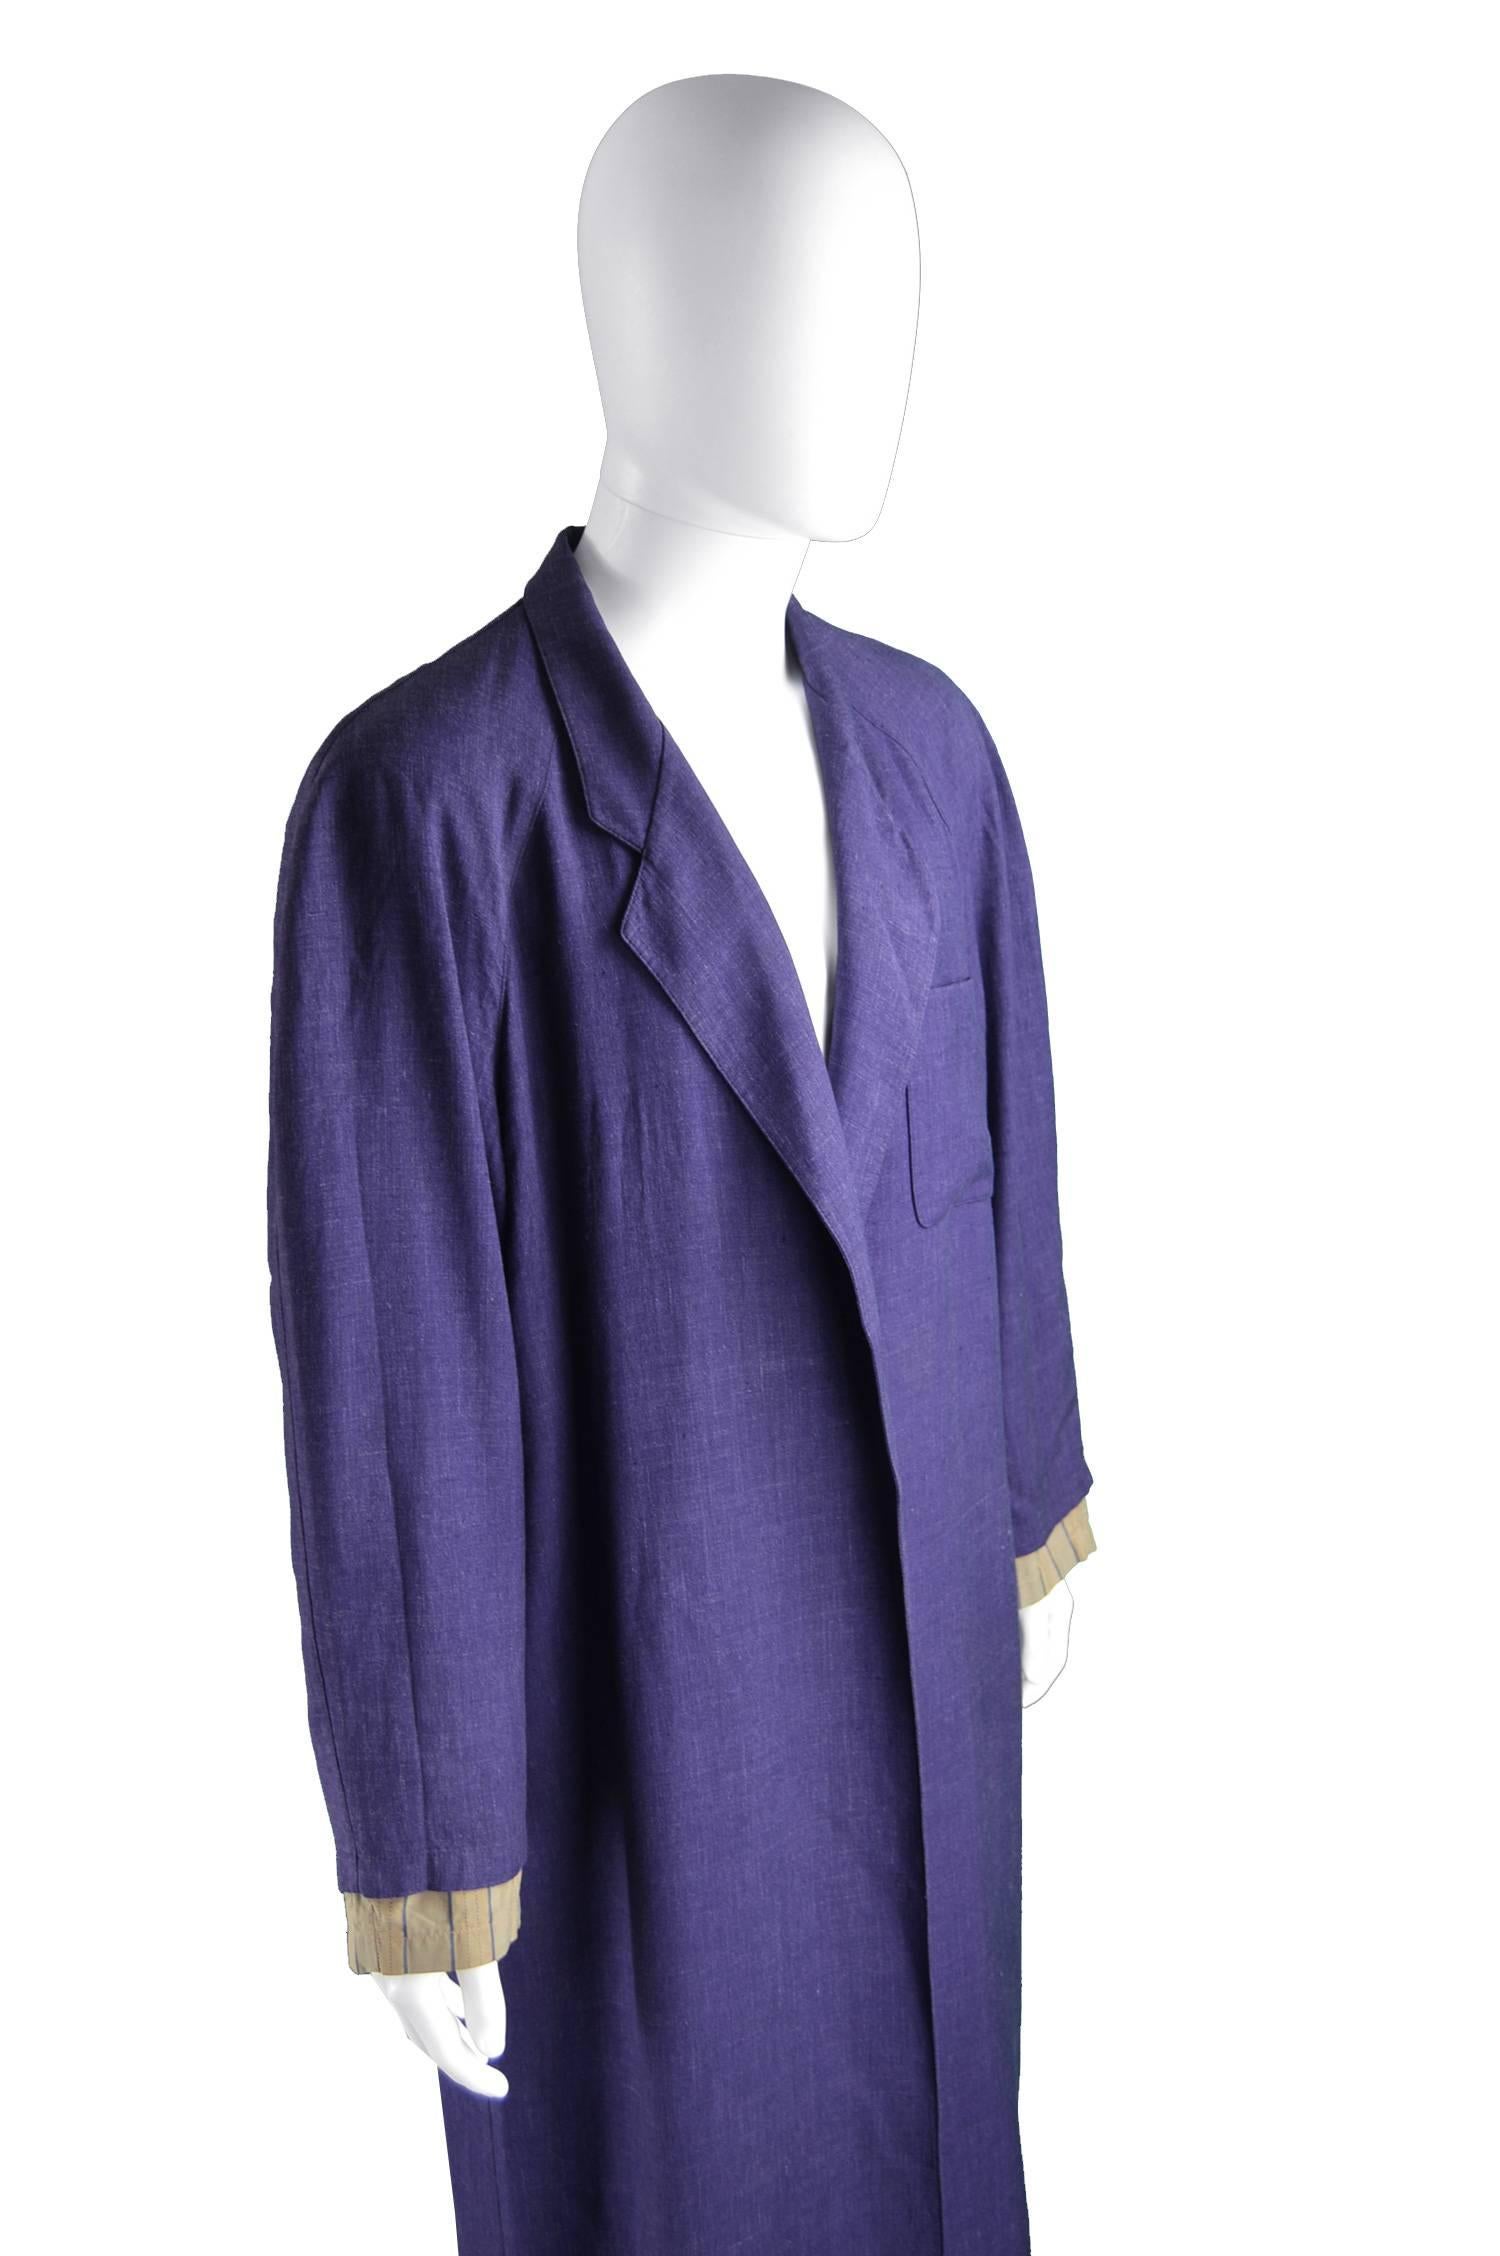 Jean Paul Gaultier Homme Pour Gibo Loose Purple Linen Coat, 1980s For Sale 2